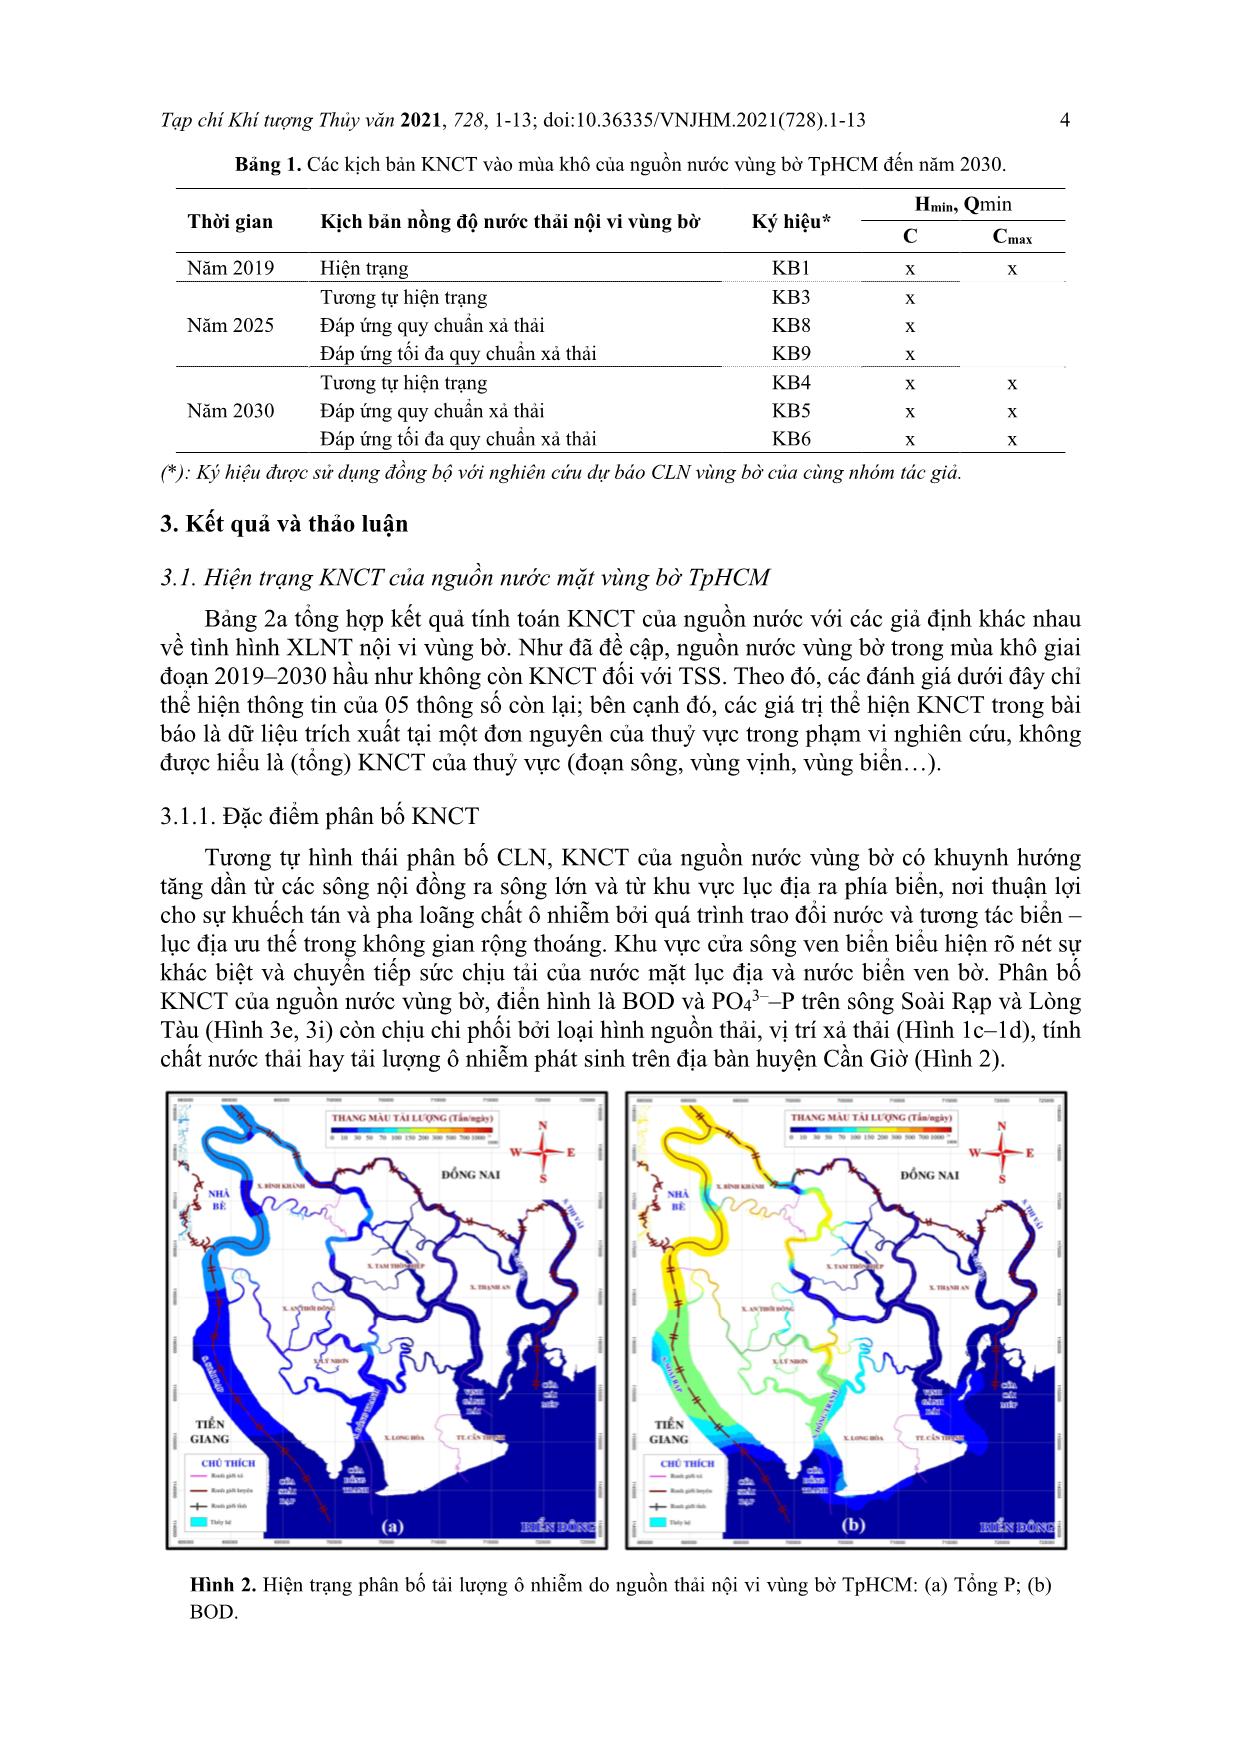 Đánh giá khả năng chịu tải của nguồn nước vùng bờ thành phố Hồ Chí Minh đến năm 2030 và đề xuất giải pháp cải thiện trang 4